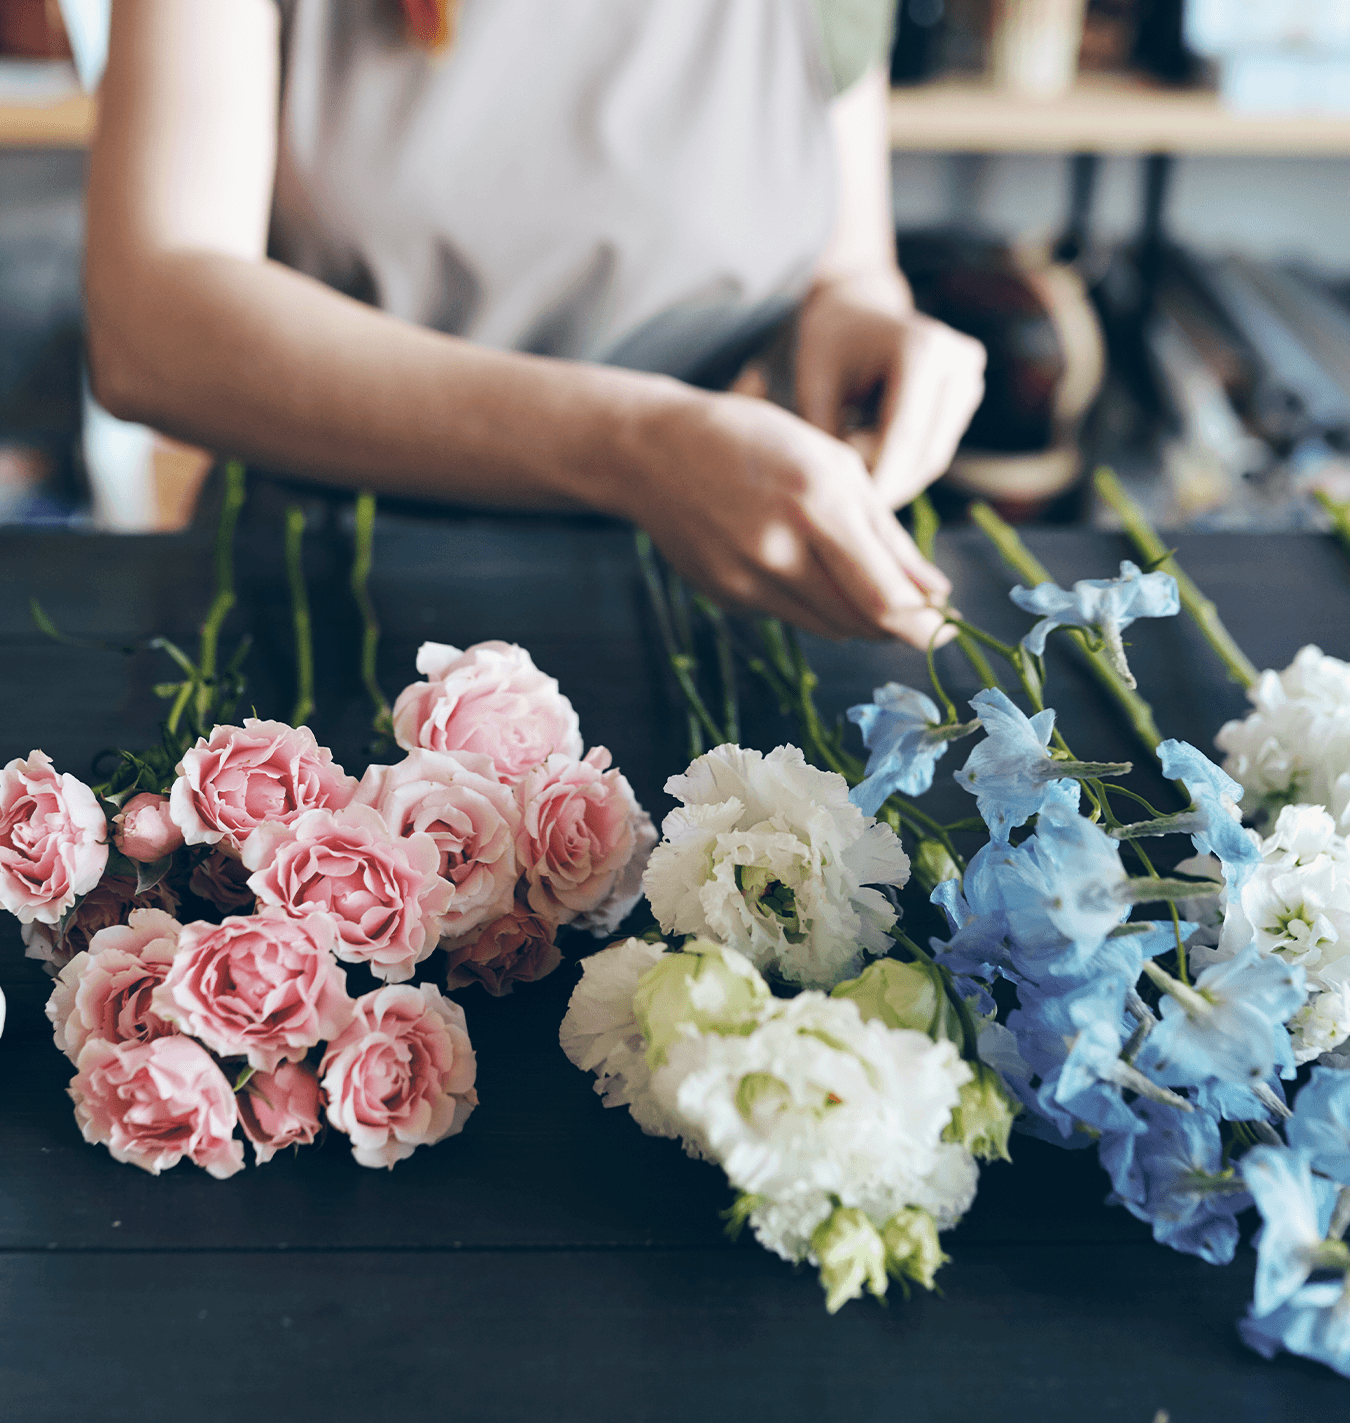 salisbury floral studio preparing cut flowers